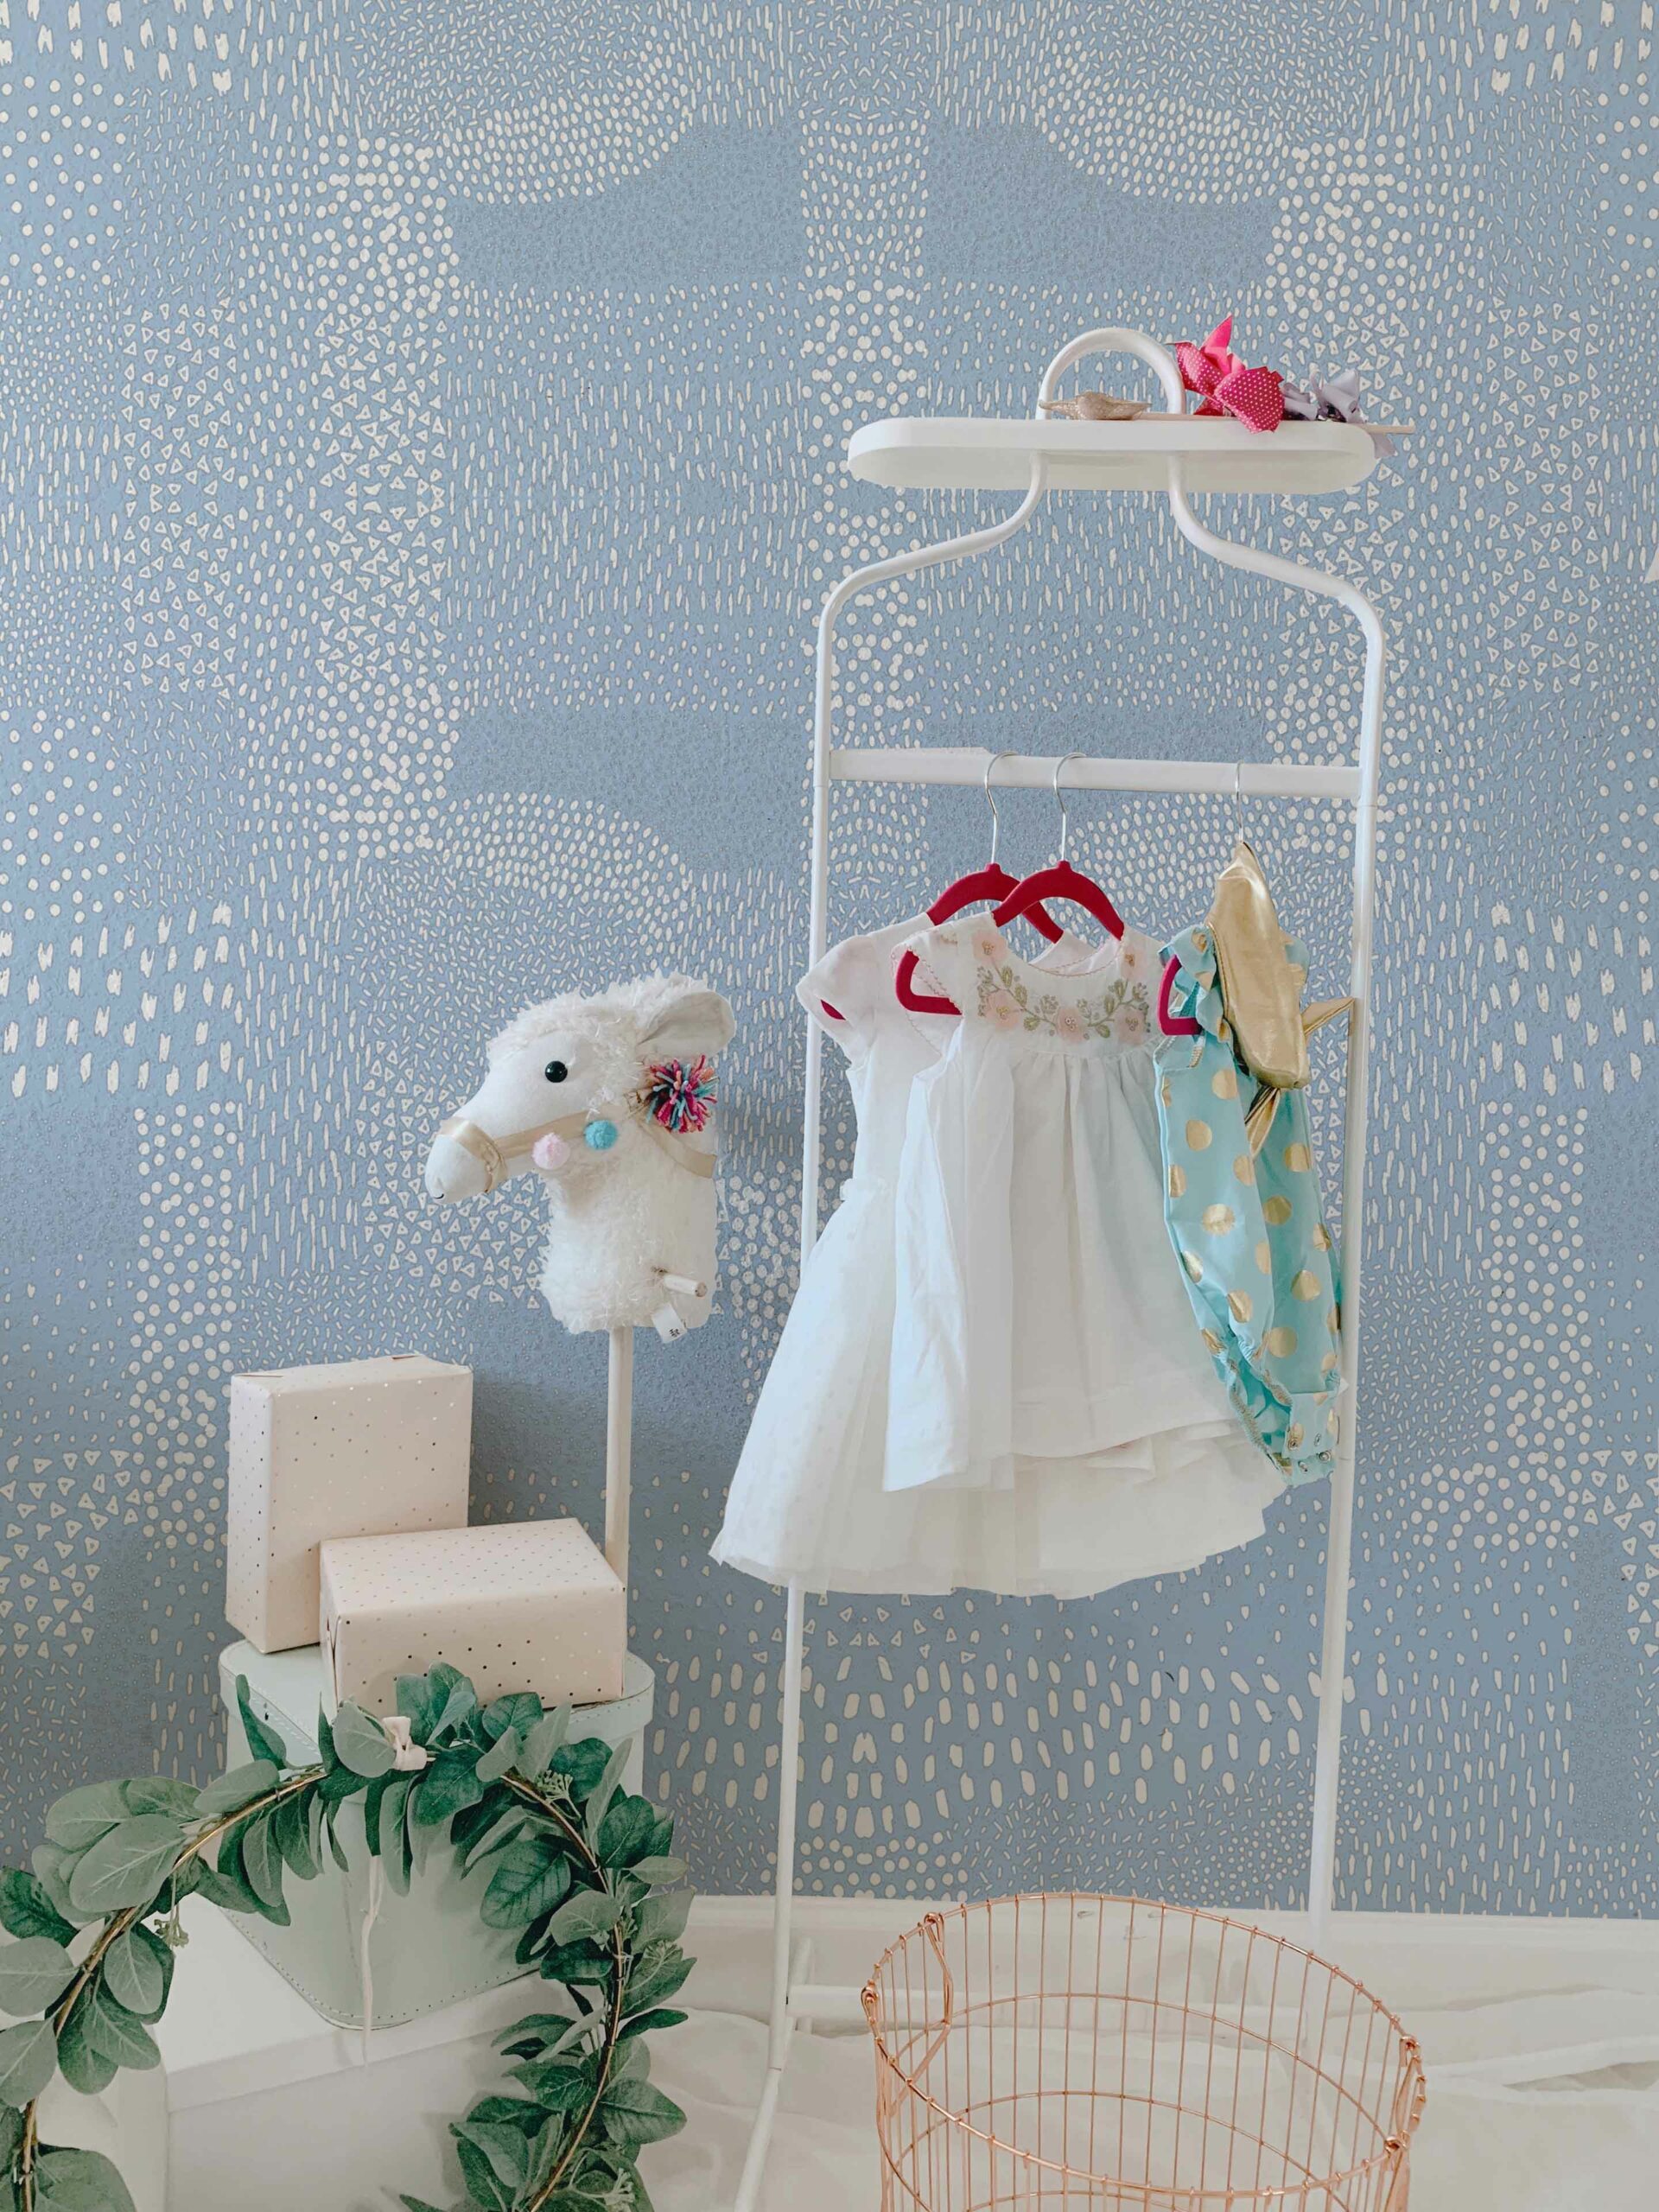 Macchiette-Periwinkle-Azure-MaVoix-wallpaper-Nursery-Les-Petits